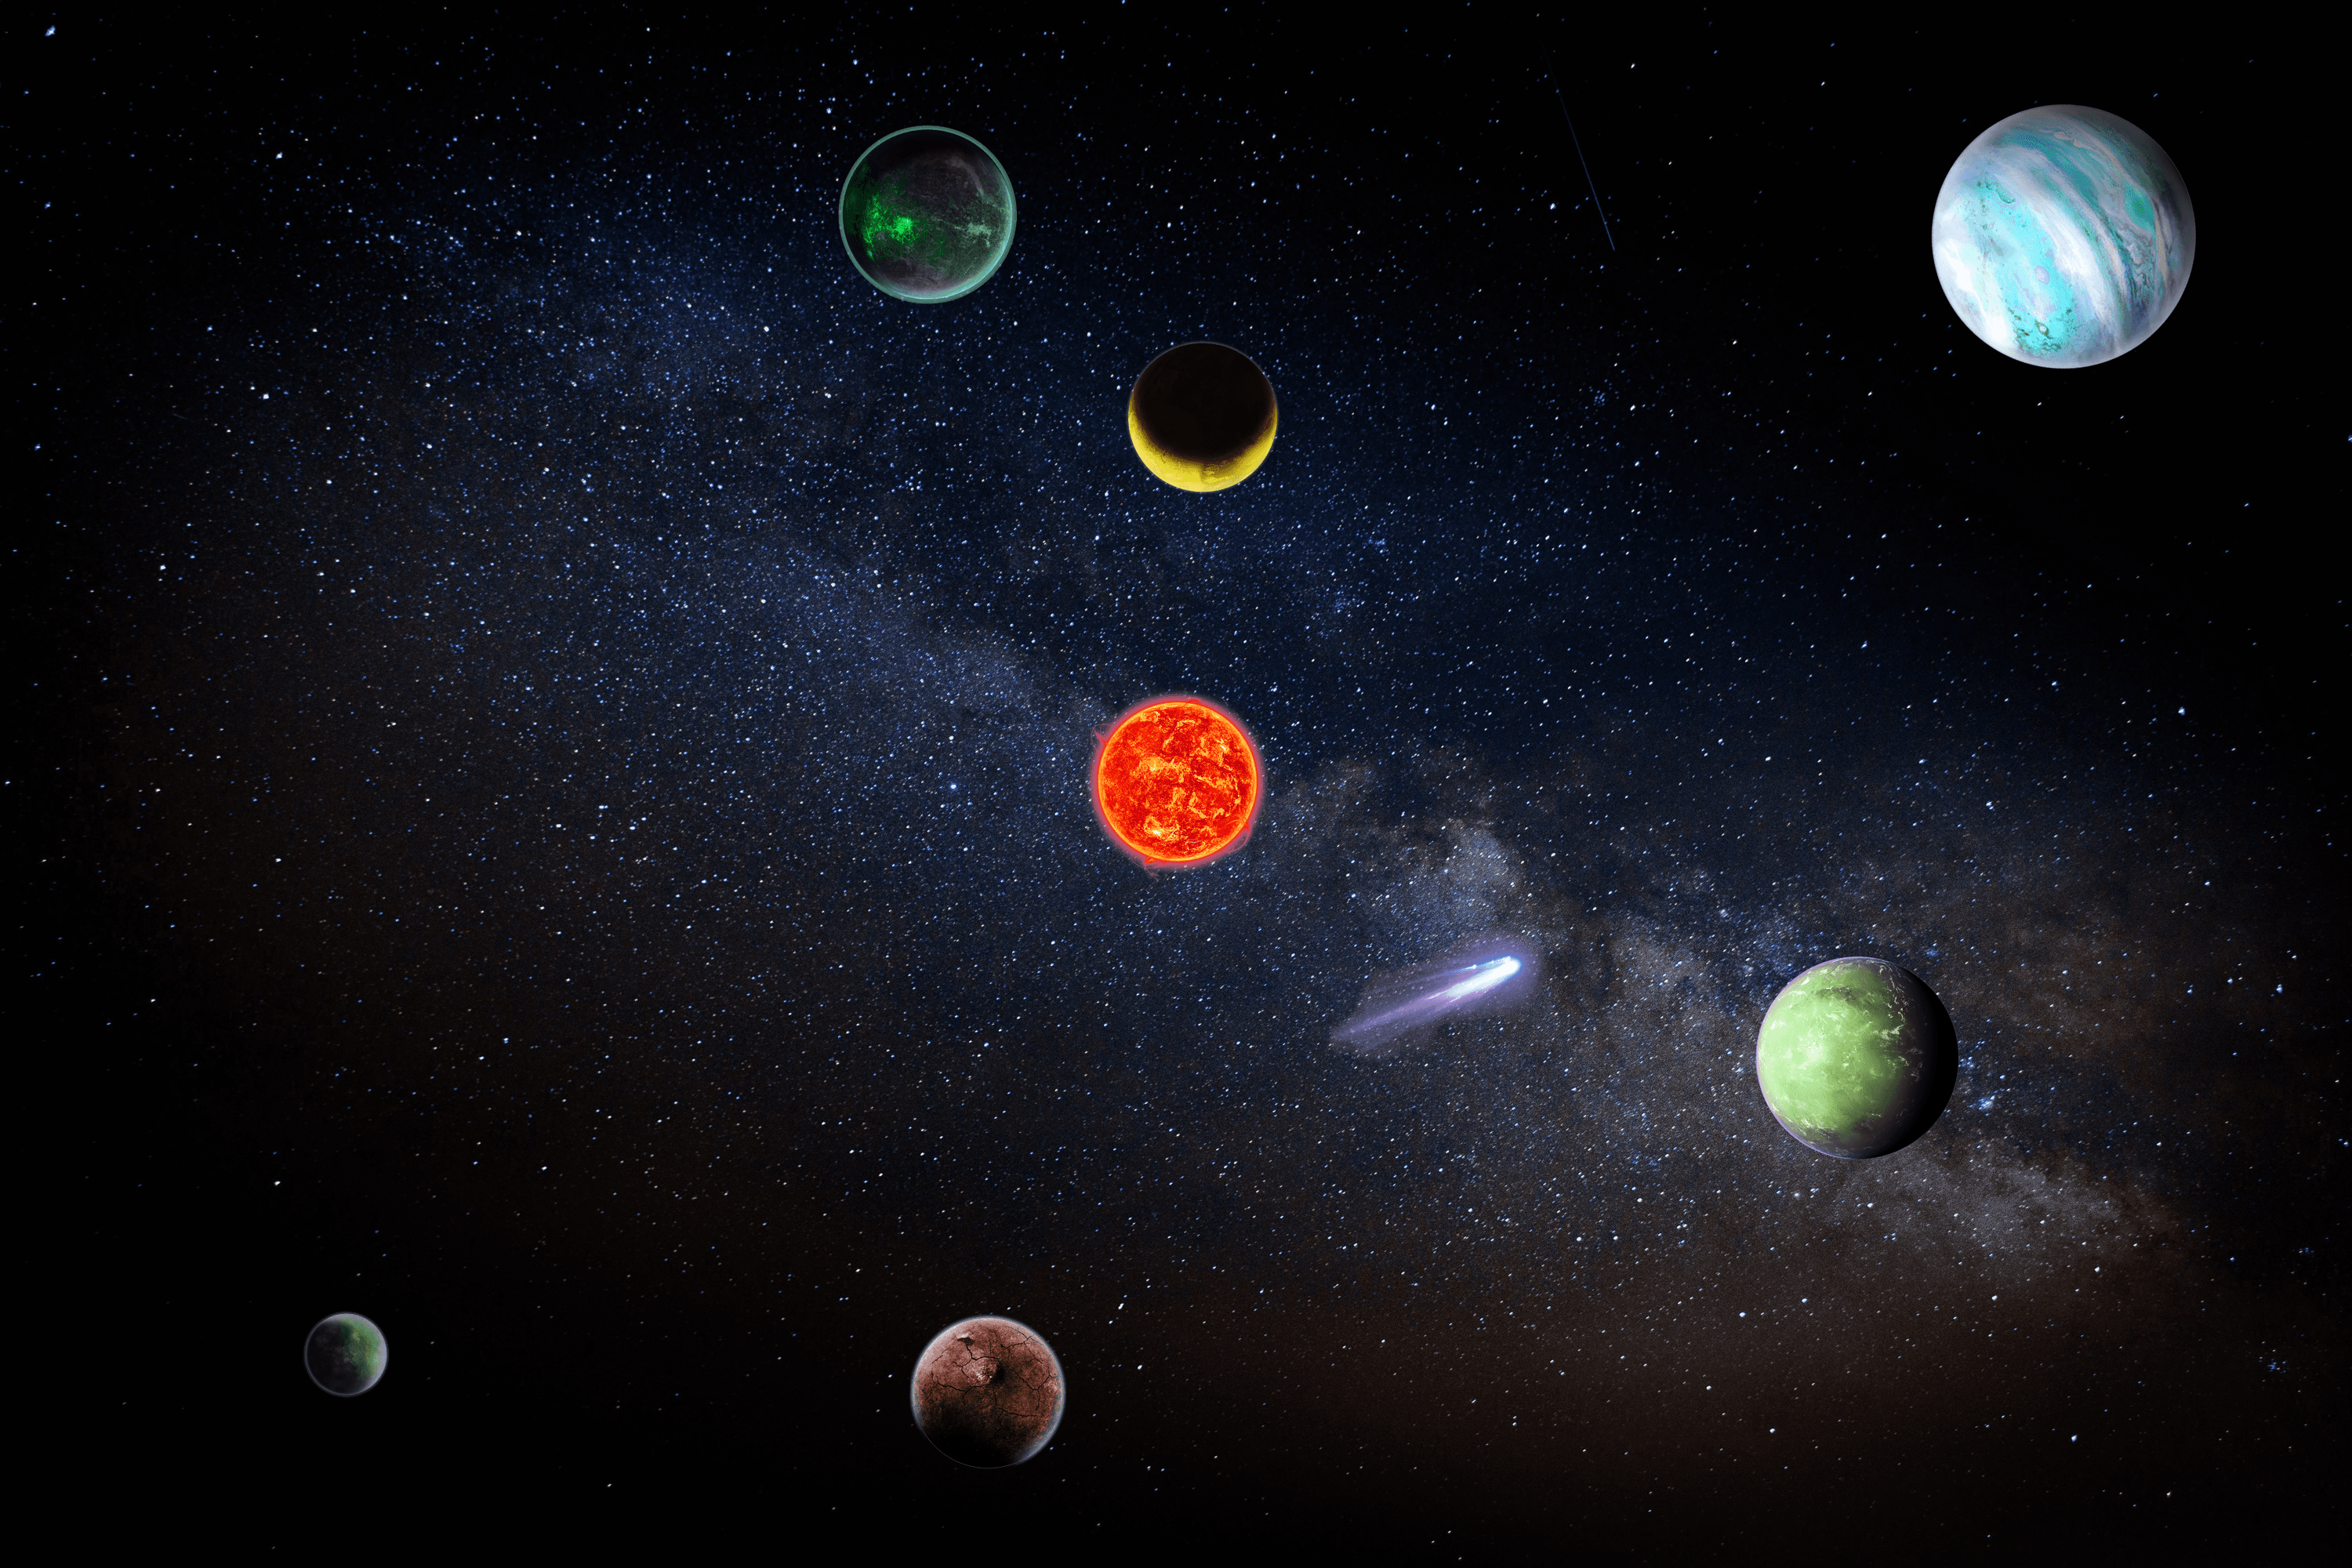 Solar System #649 - Amelia Galaxy